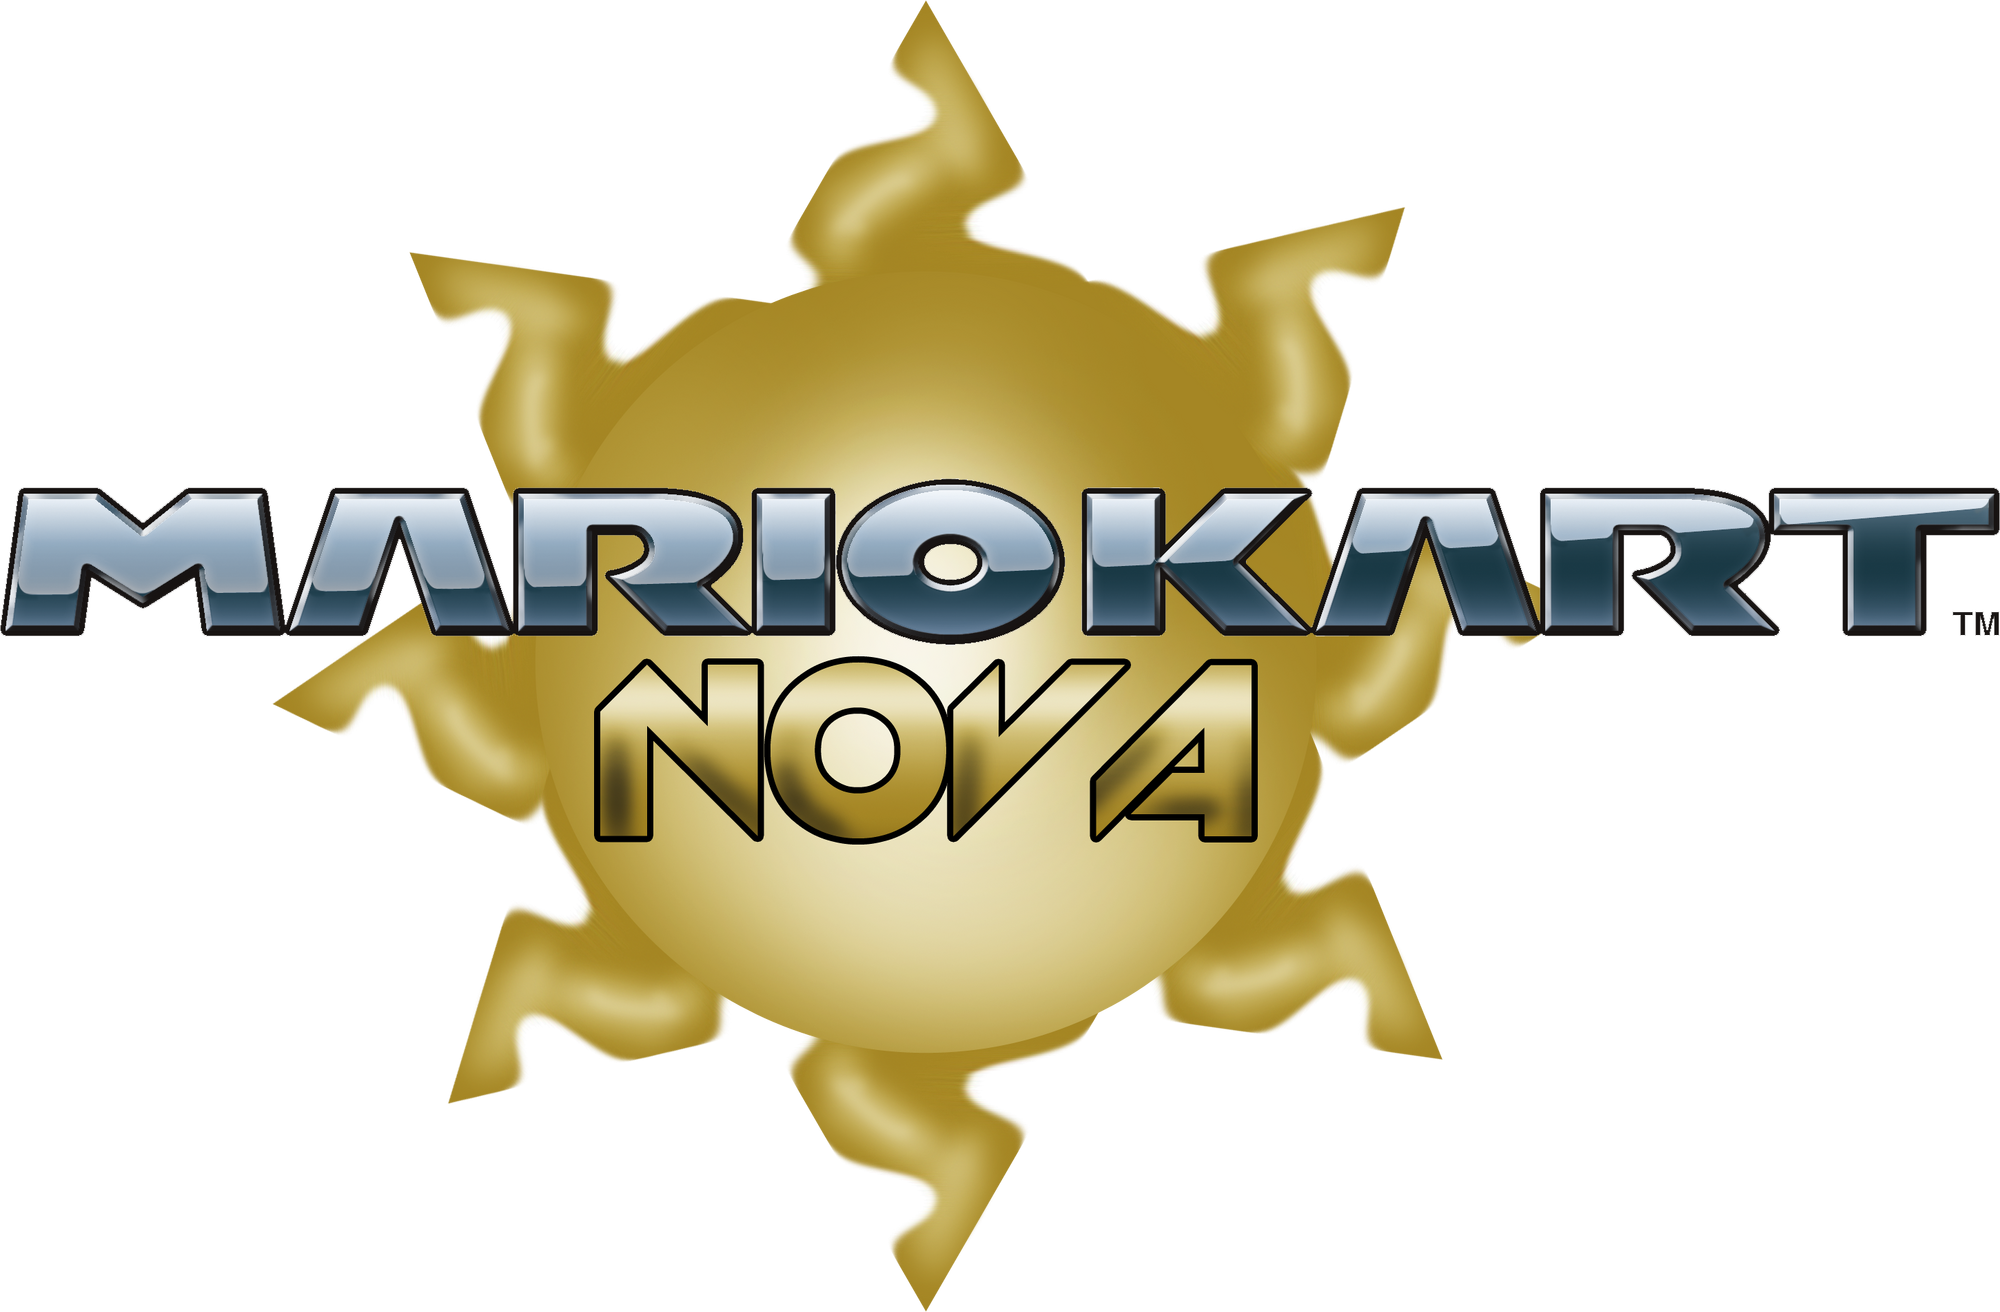 Mario Kart Nova Fantendo Nintendo Fanon Wiki Fandom Powered By Wikia 3707